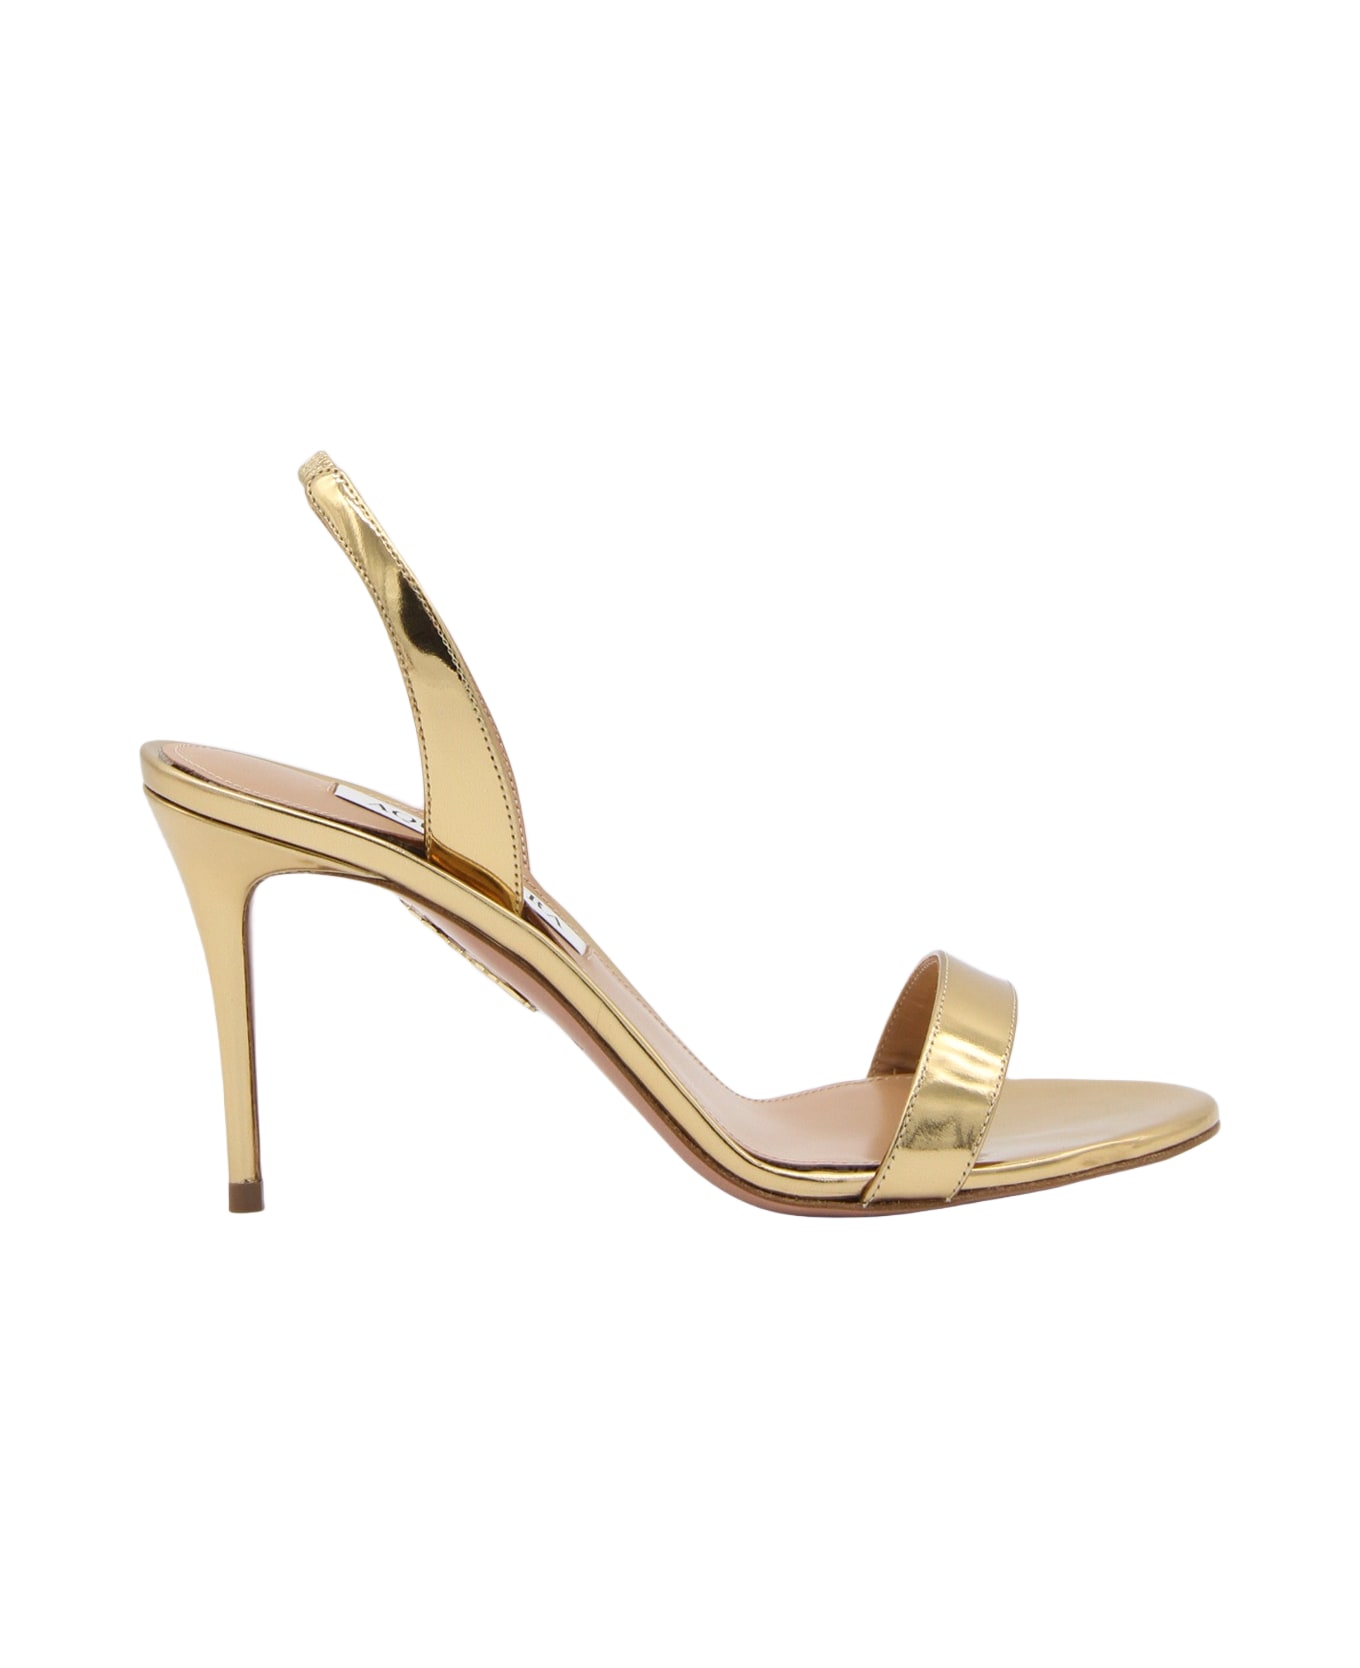 Aquazzura Gold-tone Leather Sandals - SOFT GOLD サンダル